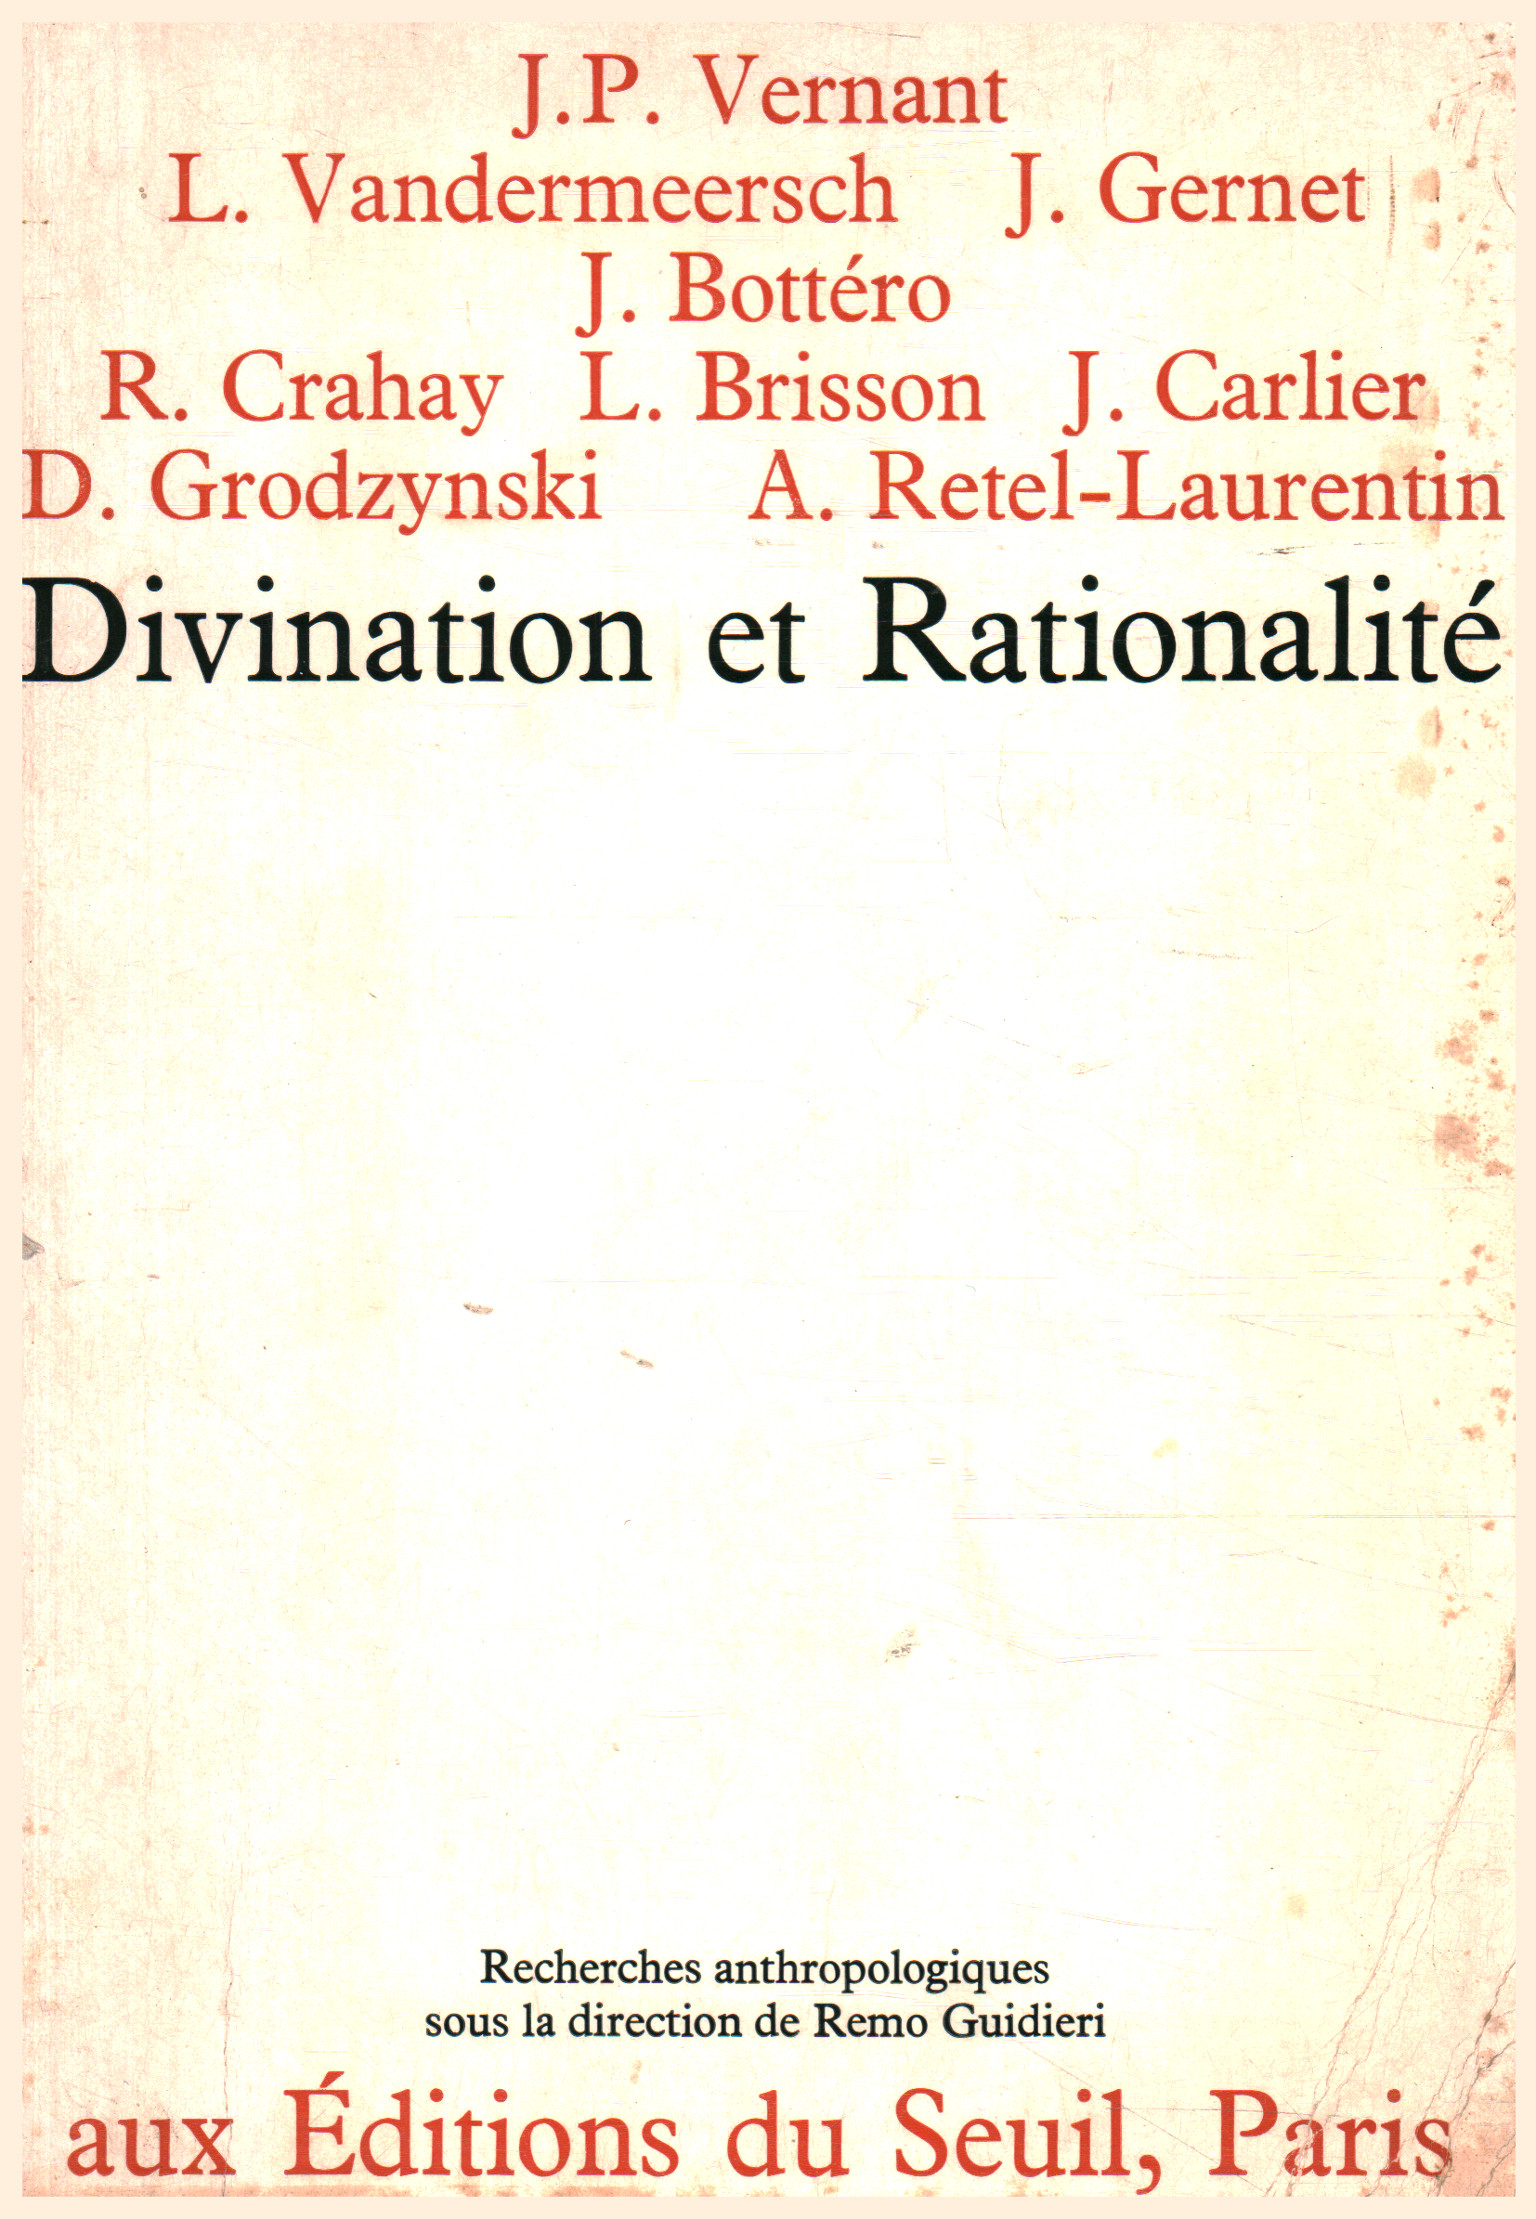 Divination et rationalité, AA.VV